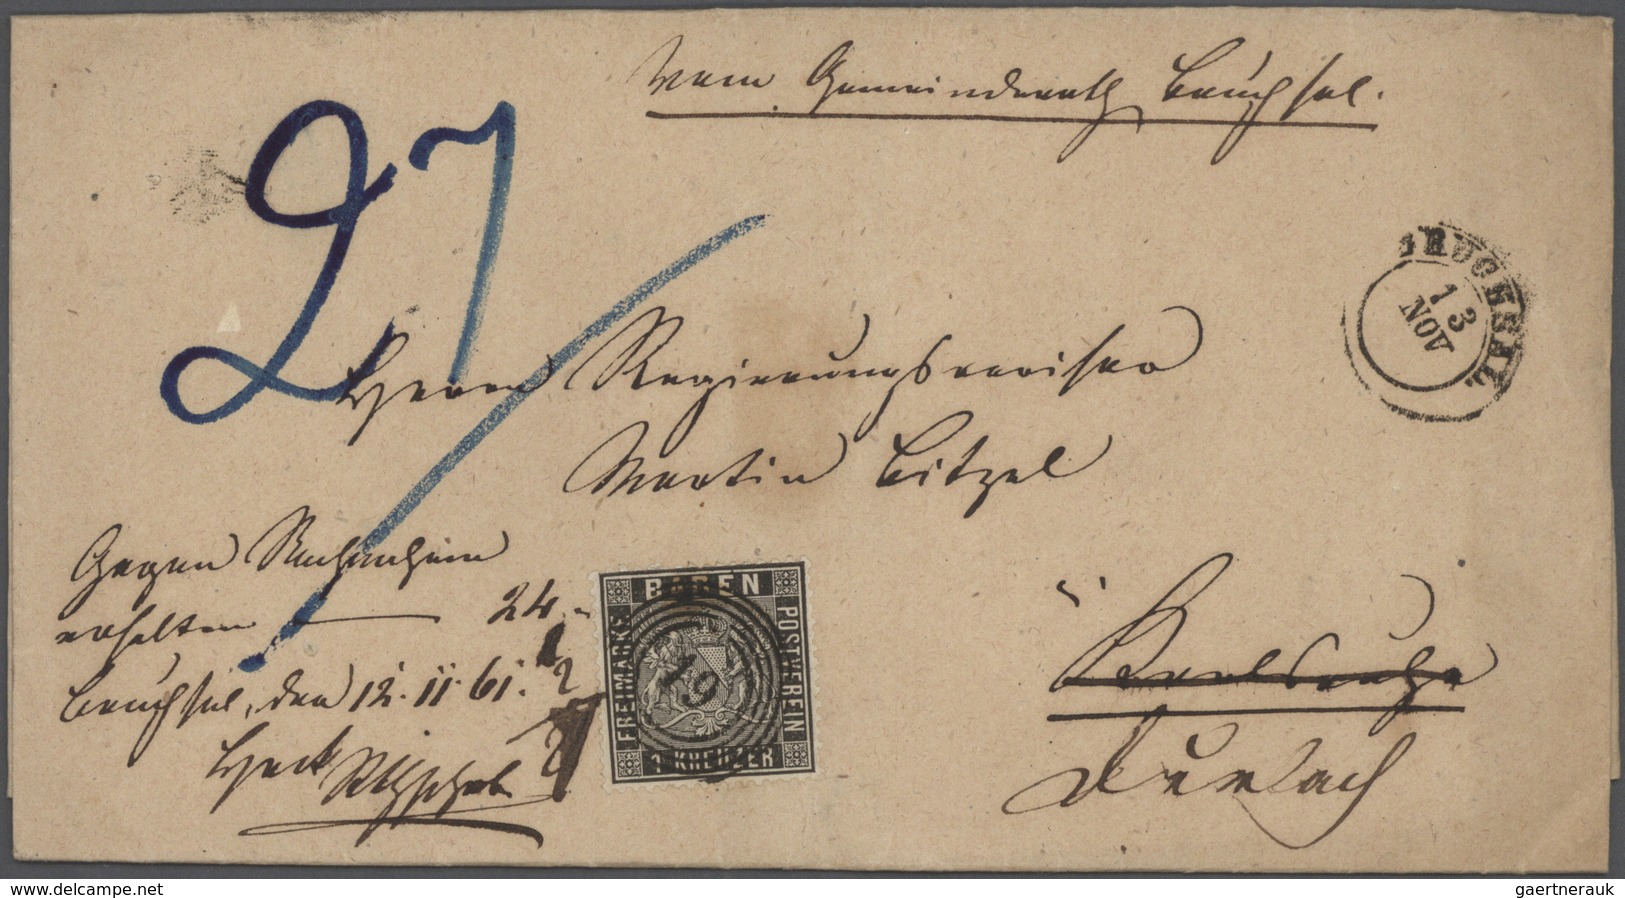 31141 Altdeutschland: 1820/1920, ca. 140 Briefe, Karten und Ganzsachen ab Vorphila mit meist einfachen Fra